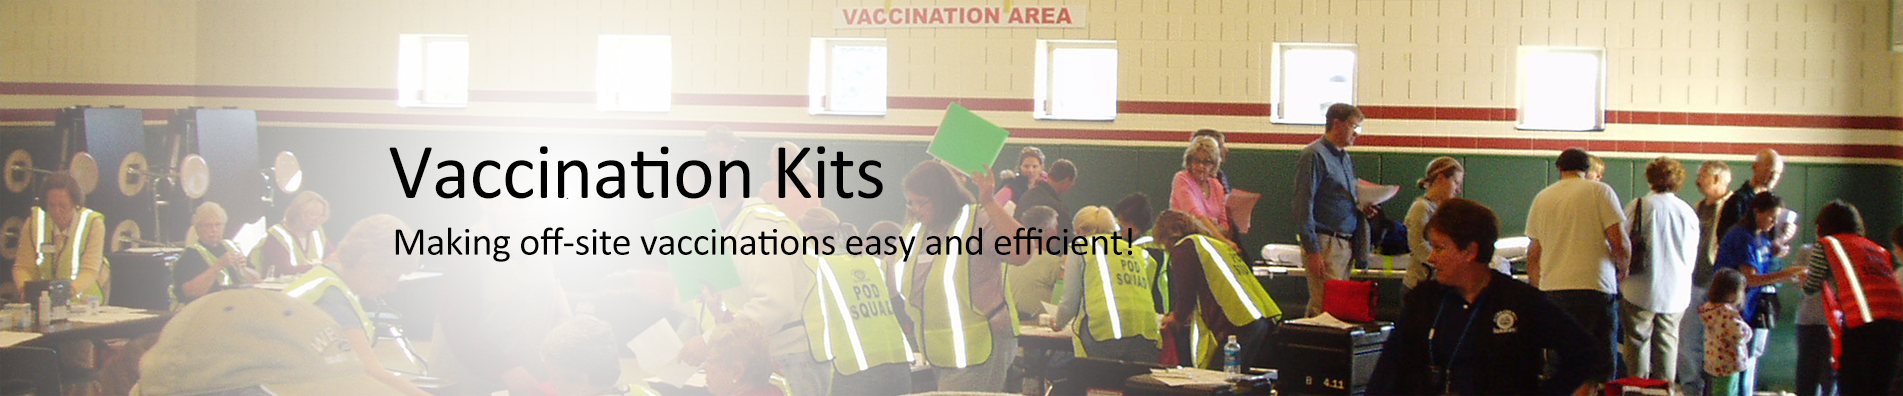 Vaccination Kits header